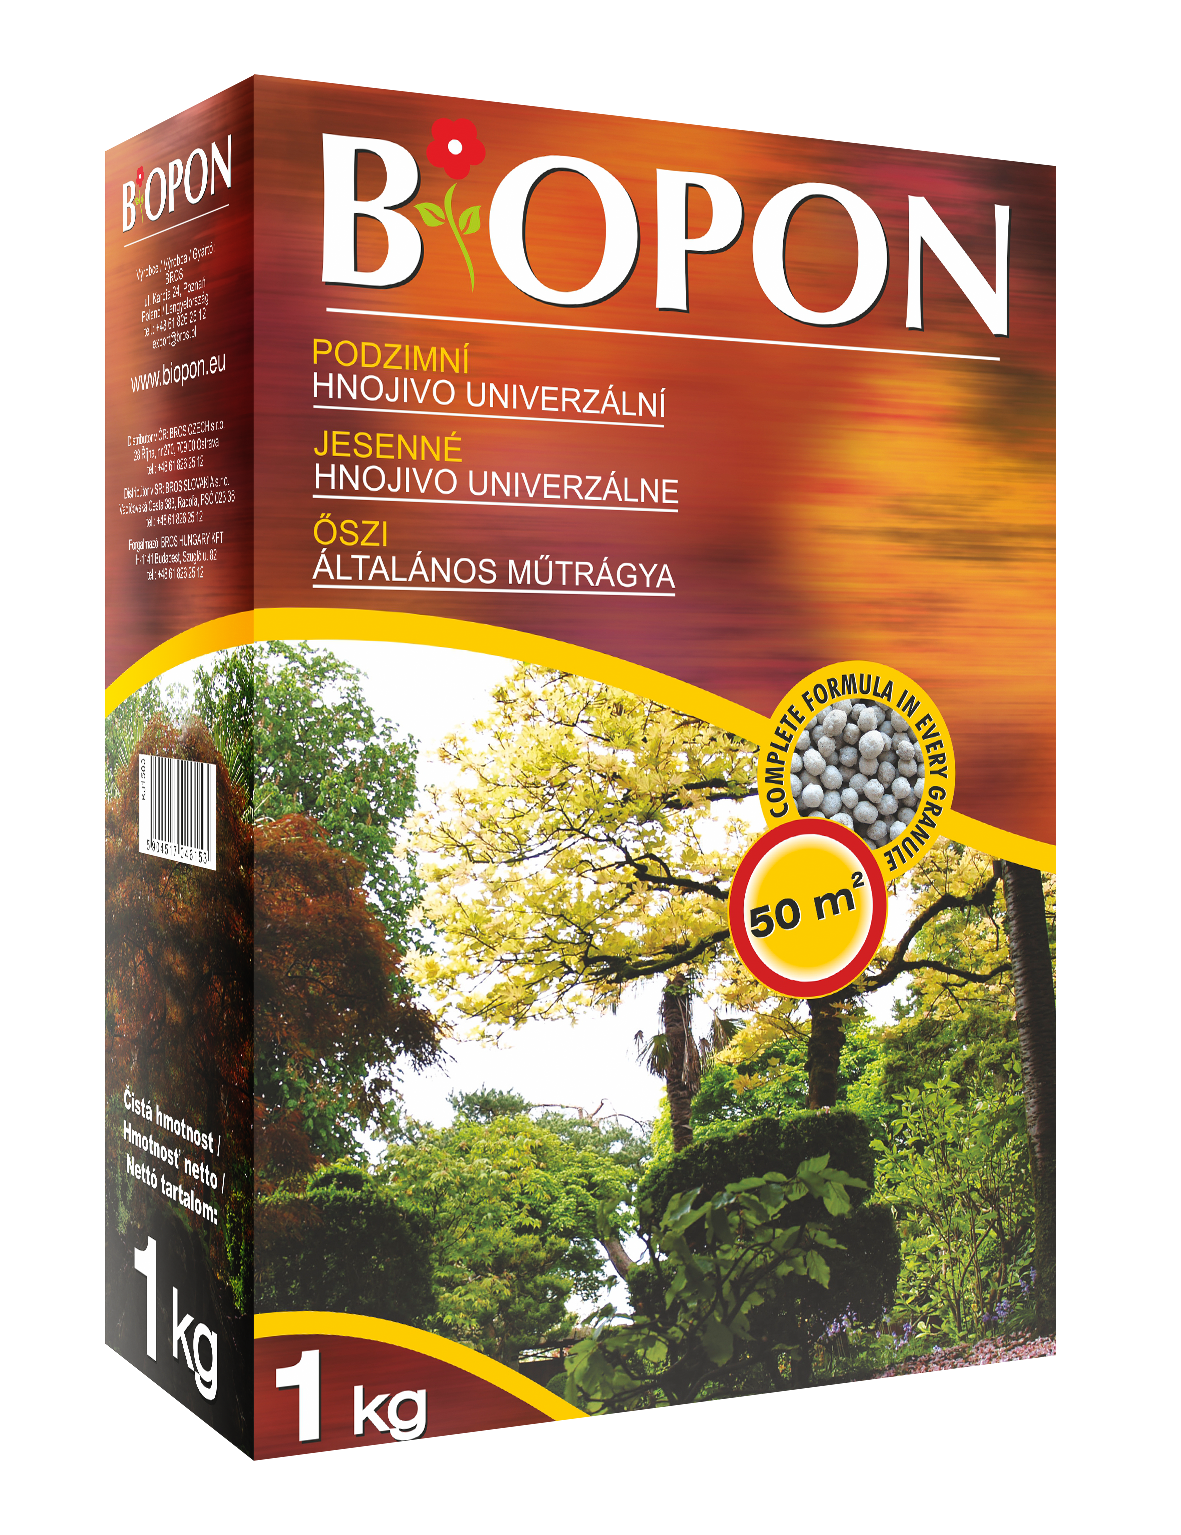 Biopon őszi általános műtrágya 1 kg